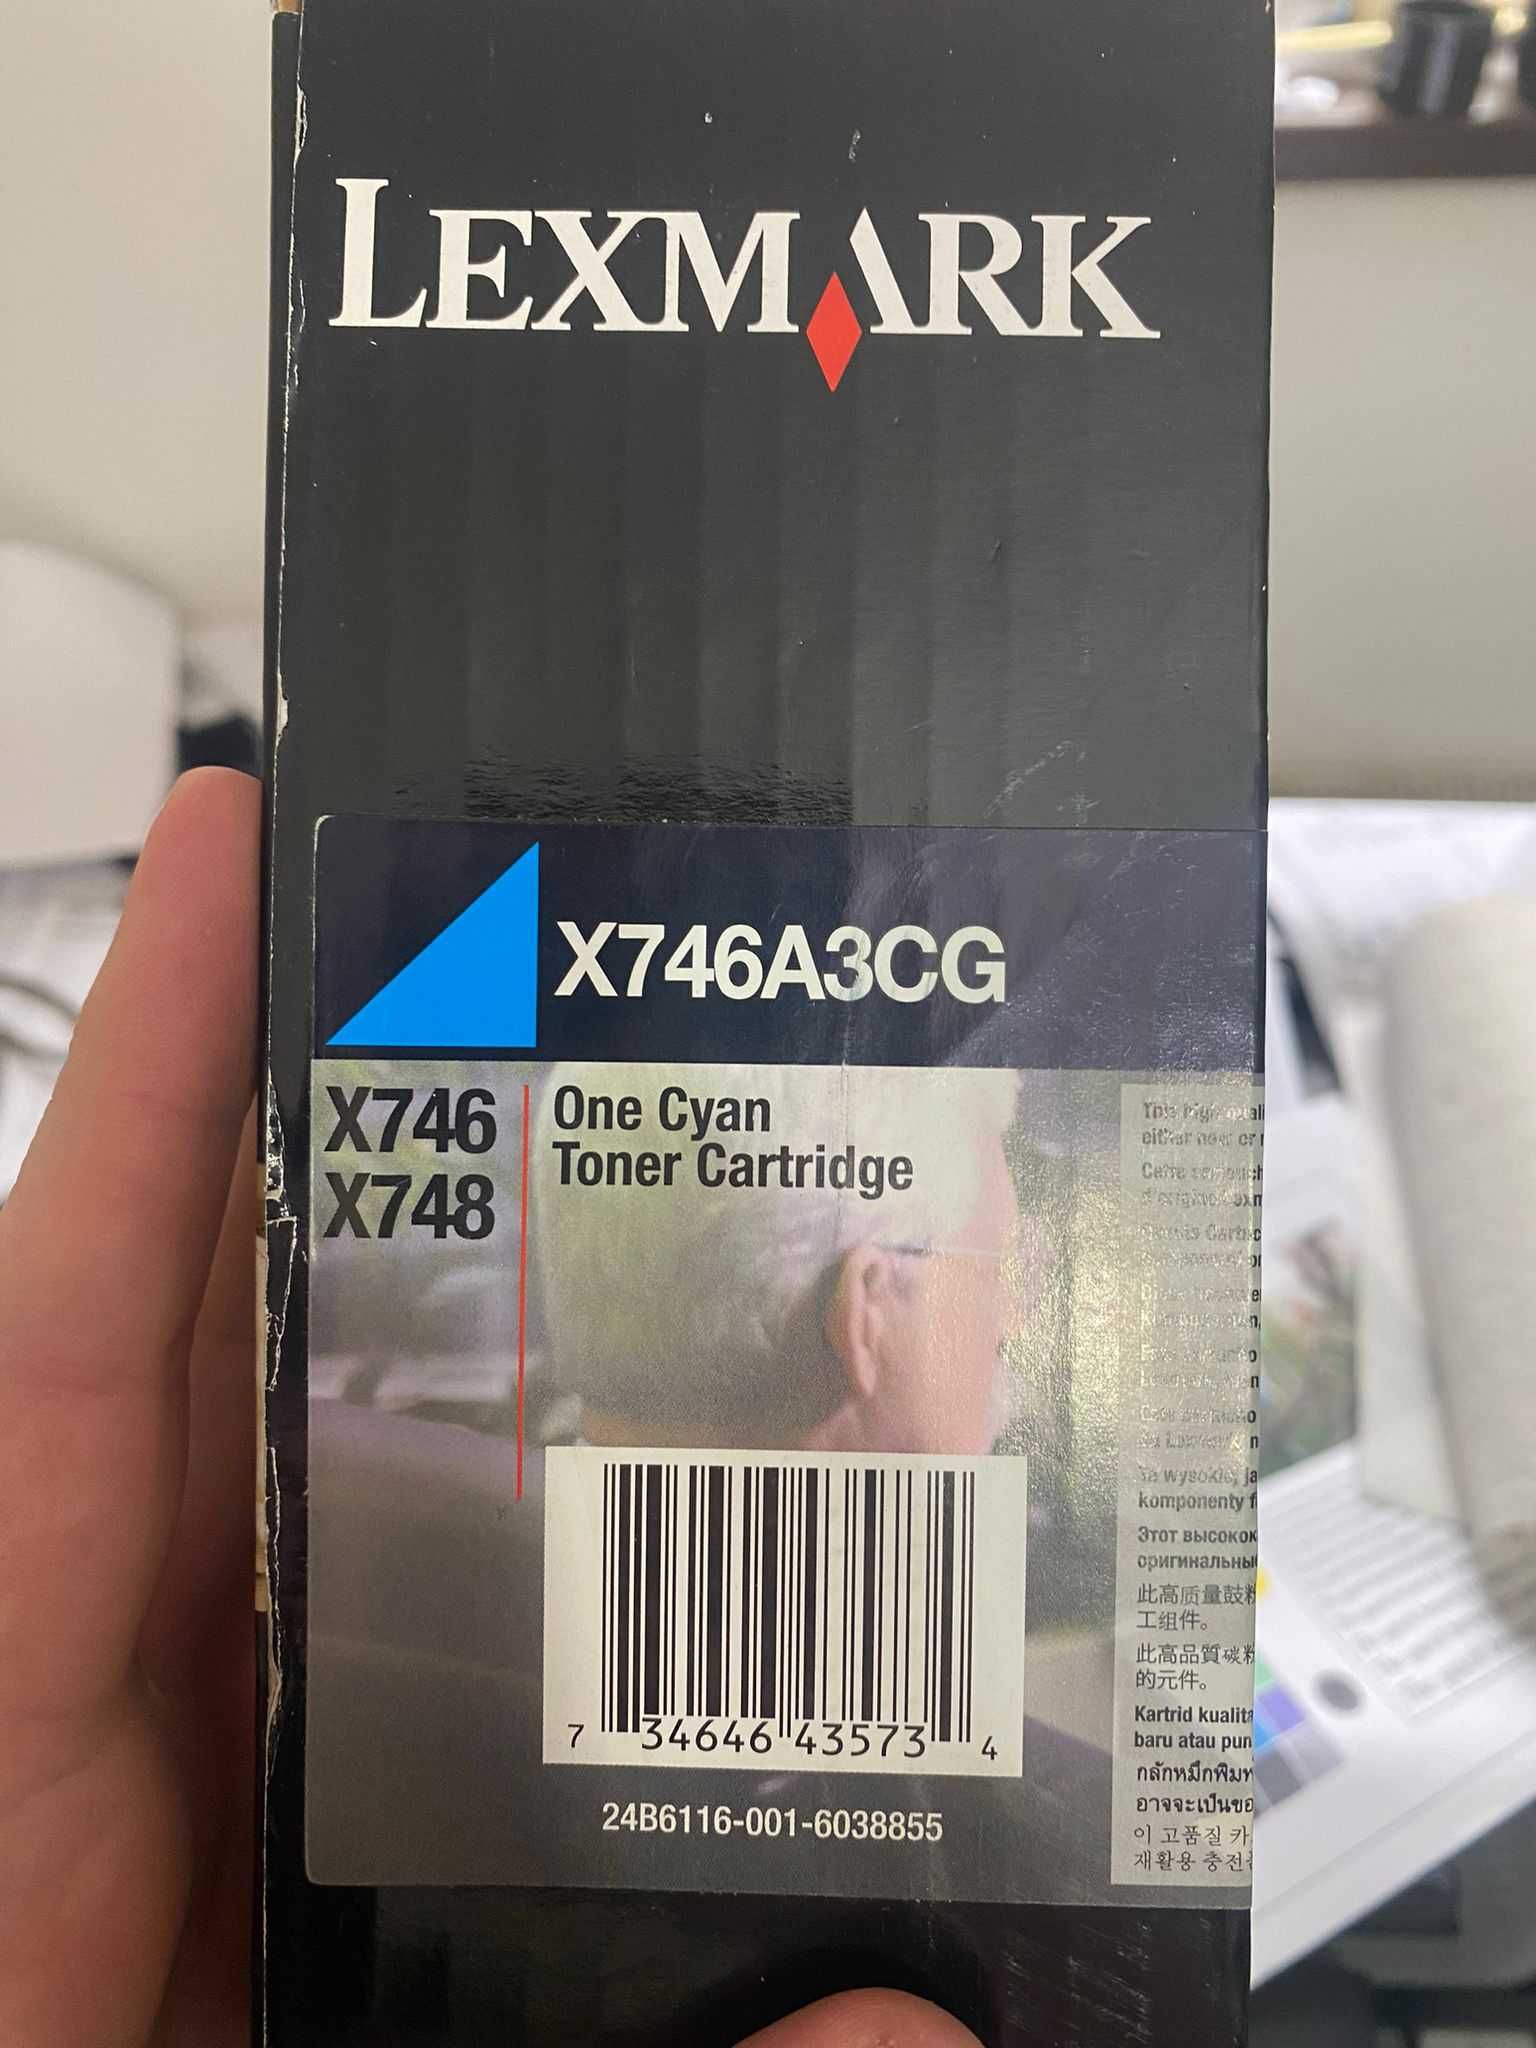 Consumabile originale Lexmark